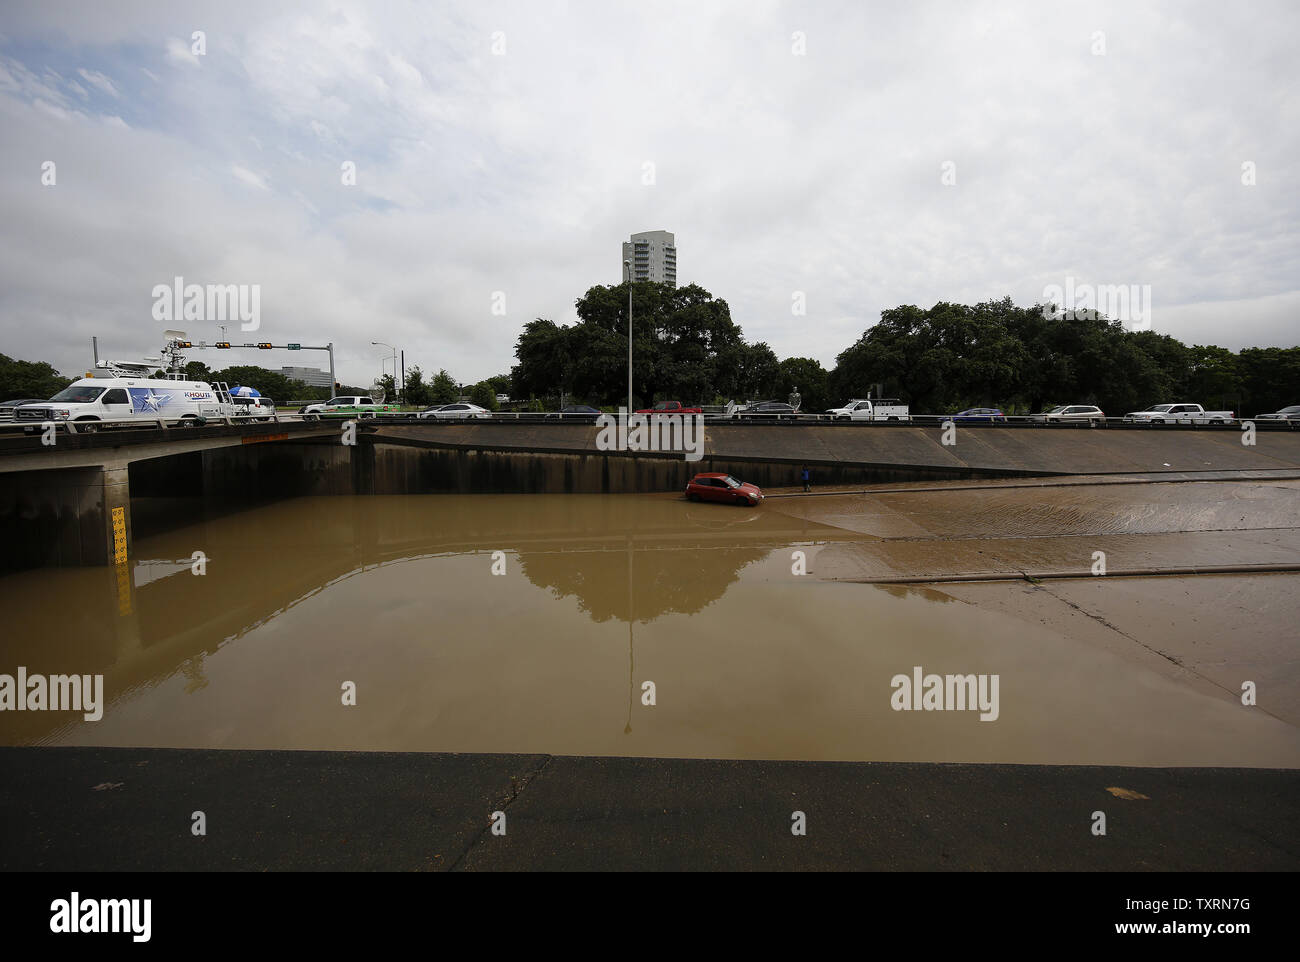 Un veicolo è visto sinistra arenati su Allen Parkway a Houston, in Texas, il 27 maggio 2015. Un sistema meteo ha dumping precipitazioni record per tutto il Texas causando gravi inondazioni in tutta la zona. Foto di Aaron M. Sprecher/UPI Foto Stock